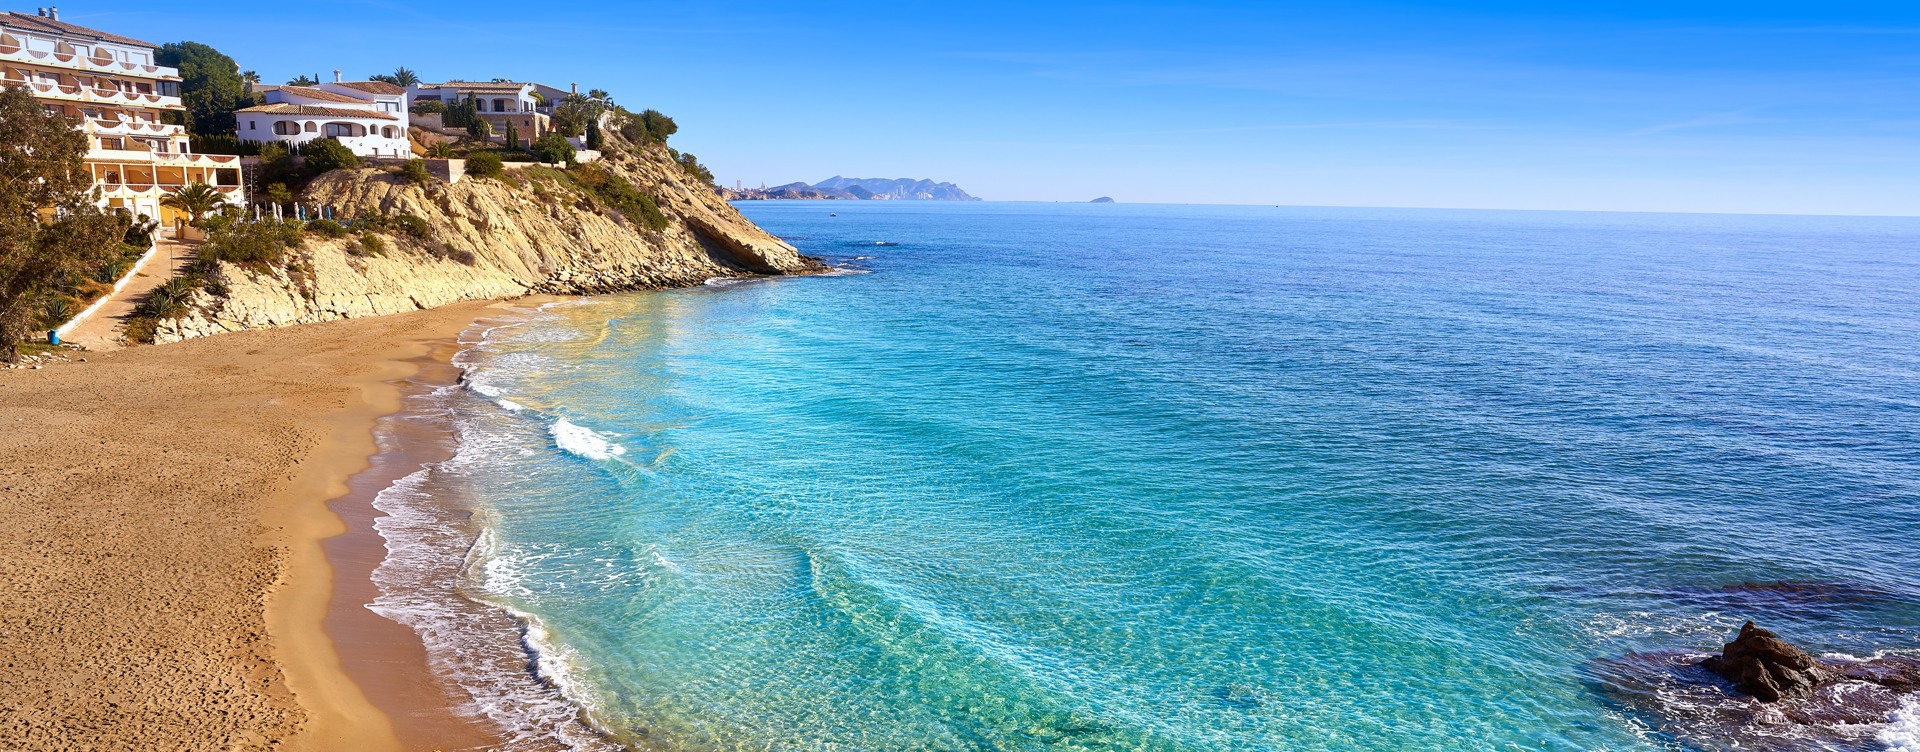 ¡Descubre el maravilloso entorno costero español
de Dormio Resort Costa Blanca!